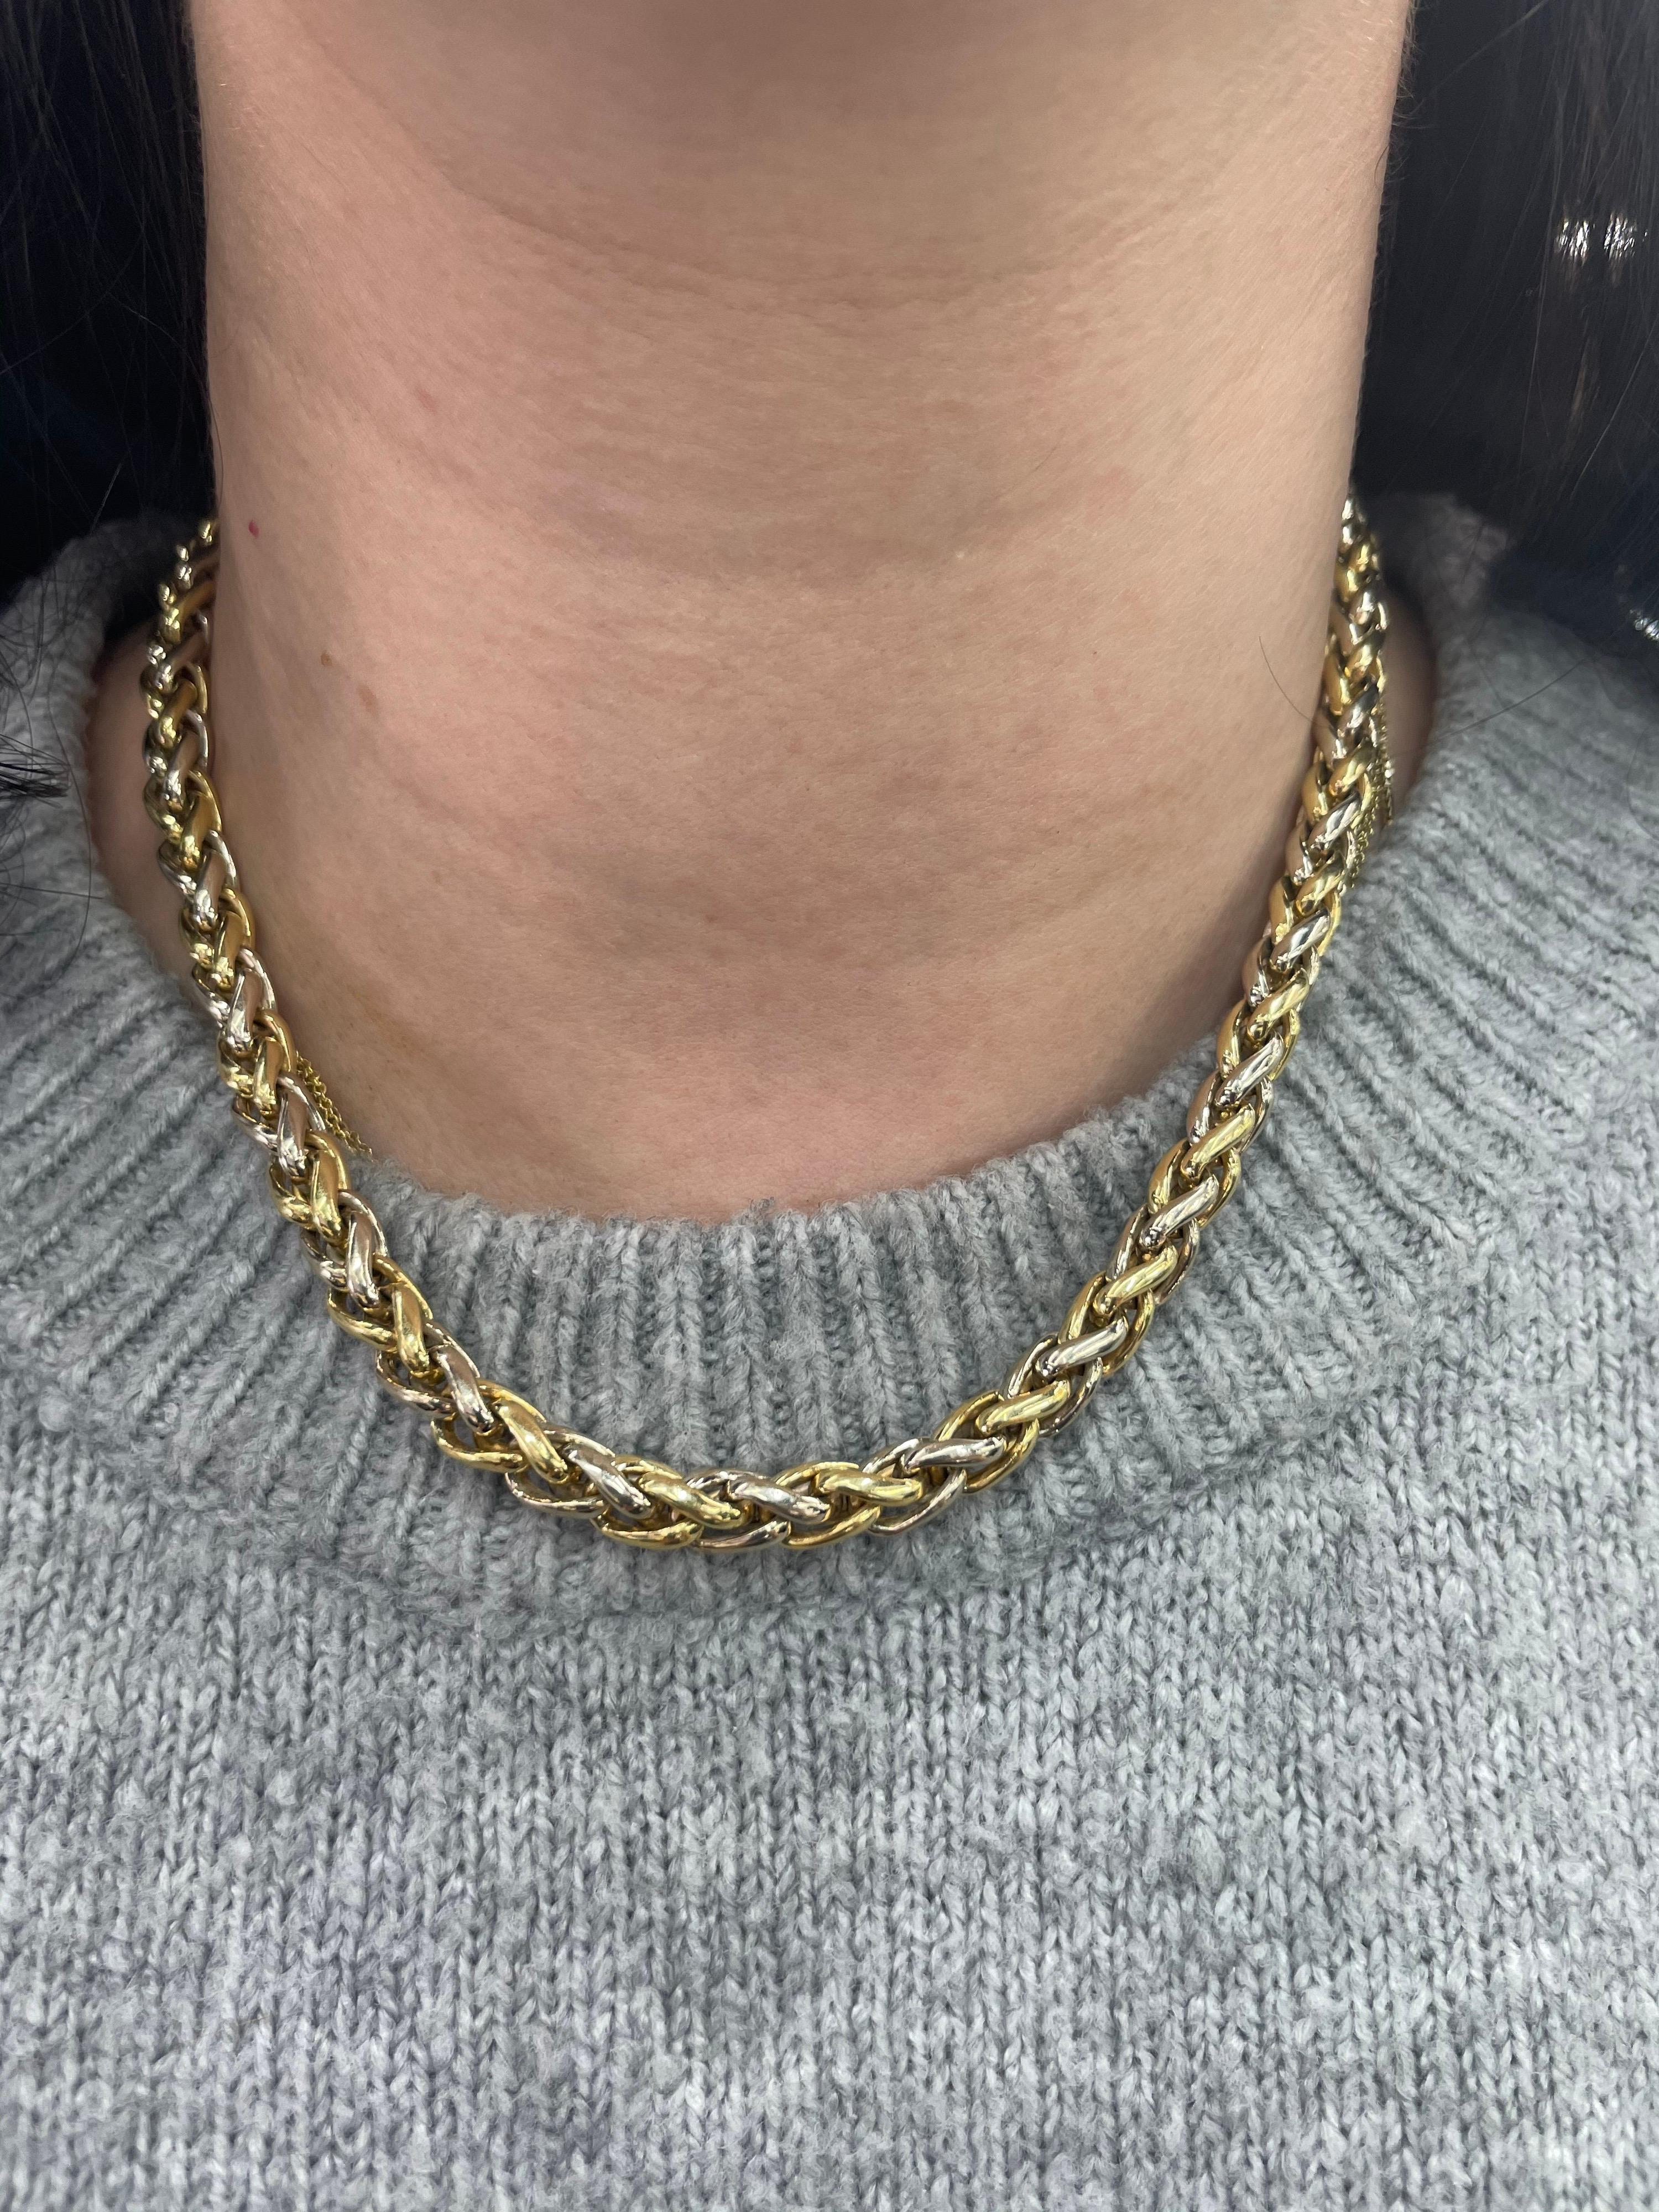 Vintage-Halskette mit geflochtenem Motiv aus 14 Karat Gelb- und Weißgold.
16.75 Zoll lang
Mehr goldene Halsketten auf Lager. 
E-Mail für weitere Bilder und Stile